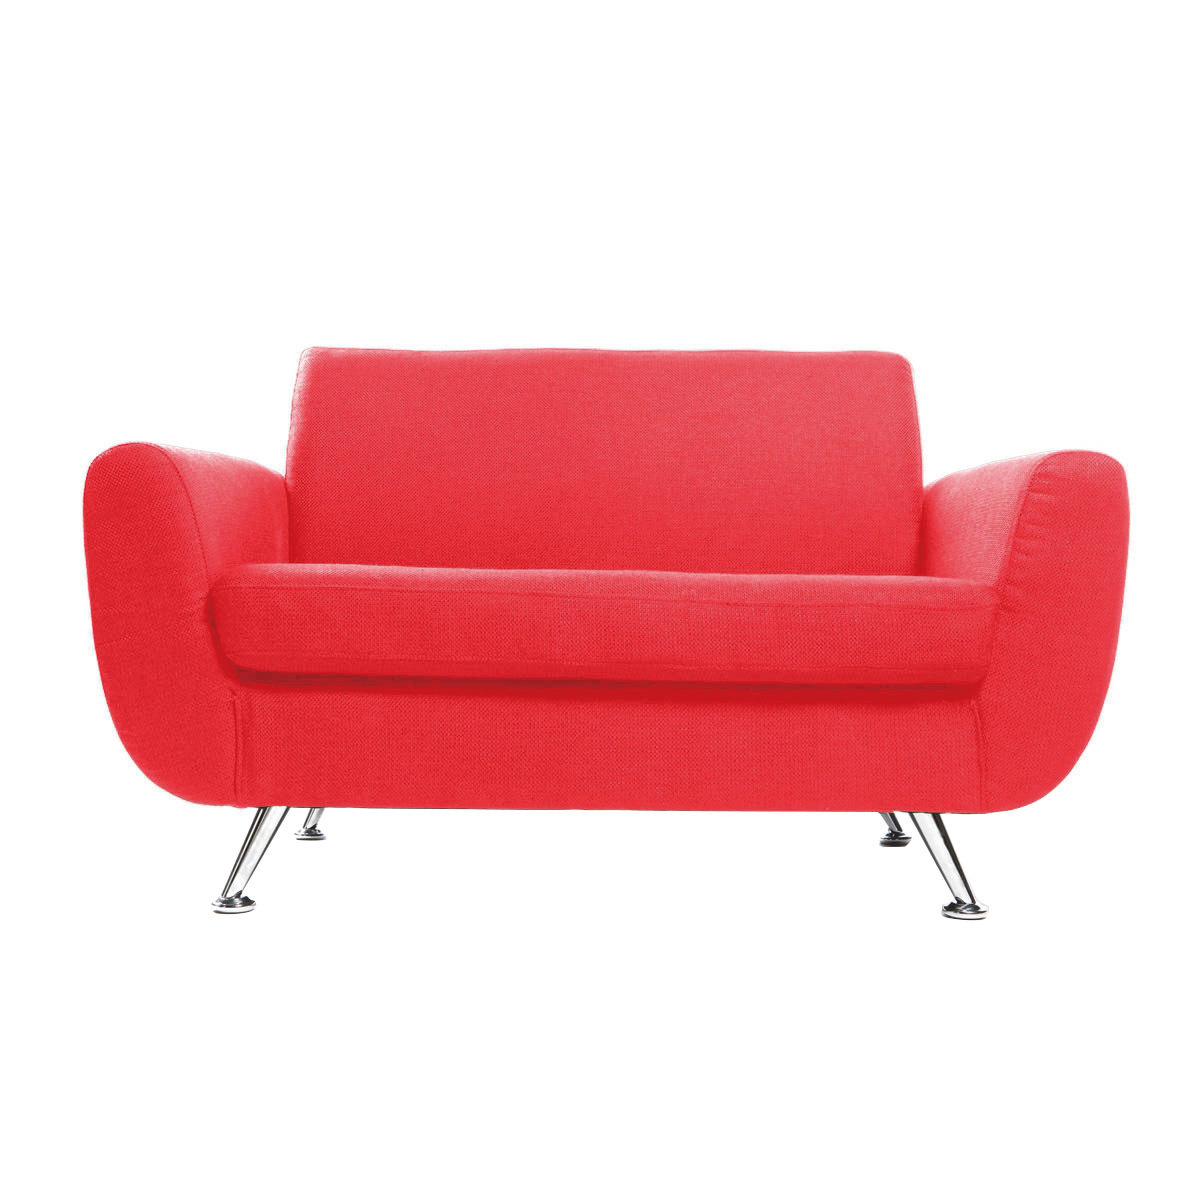 Canapé design 2 places en tissu rouge et acier chromé PURE vue1